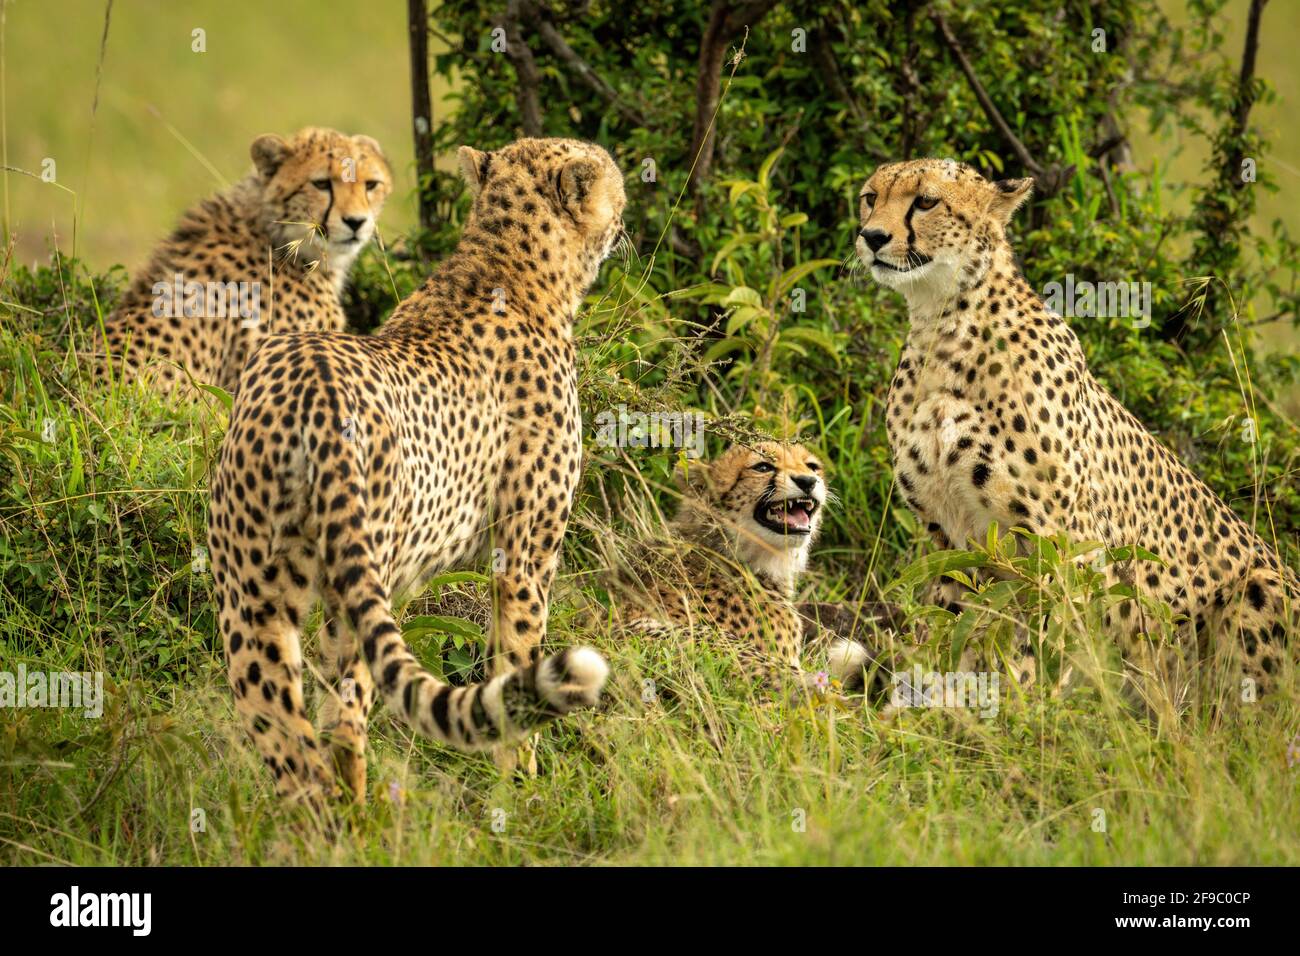 La coalición de Cheetah se sienta y se encuentra cerca de Bush Foto de stock